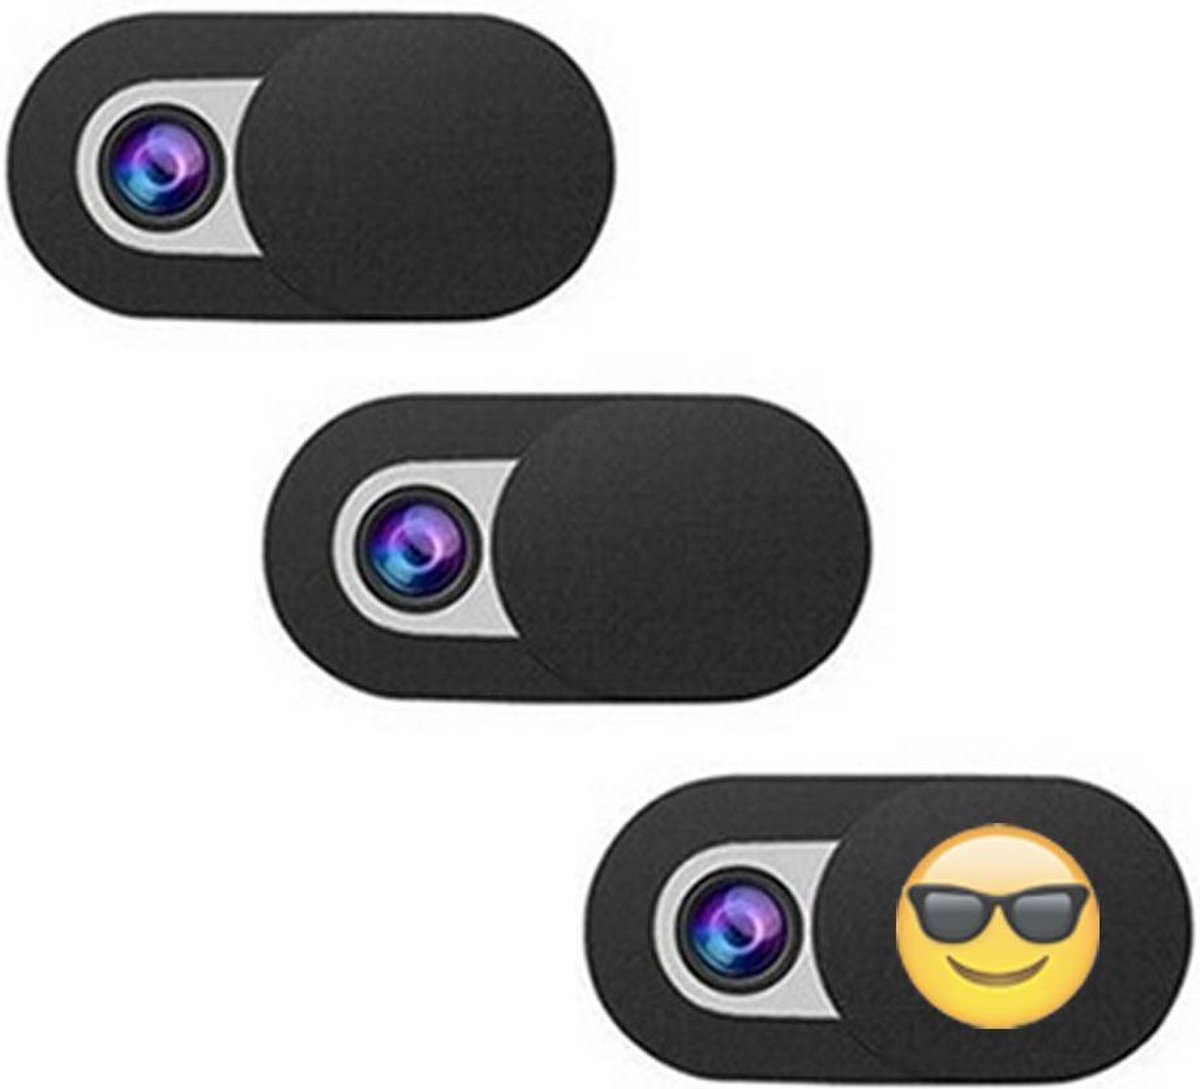 Universele Webcam cover - Unieke webcam schuifjes in Nederland met Emoji - 3 stuks zwart - Webcamcover - Privacy beschermer - BESTE PRIJS / KWALITEIT - Geschikt voor Tablets, Laptops (Macbooks) en Smartphones